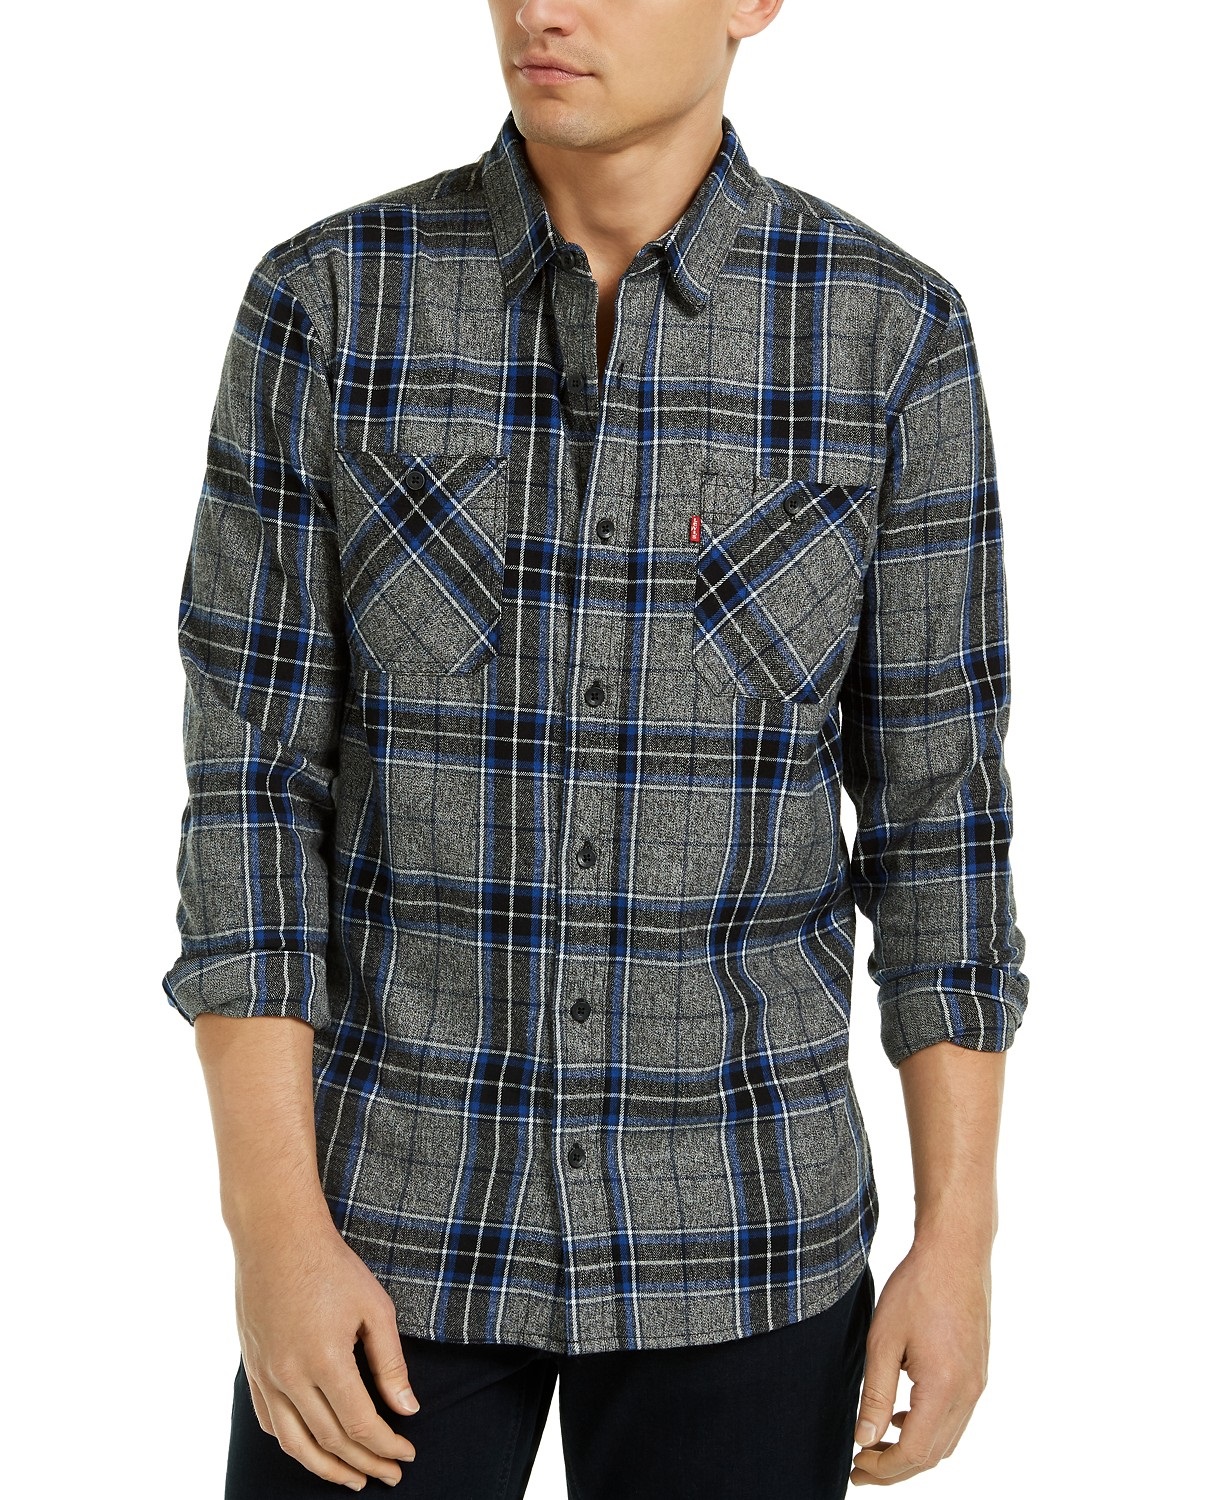 Levi's Men's Crance Plaid Flannel Shirt Gray Size Large